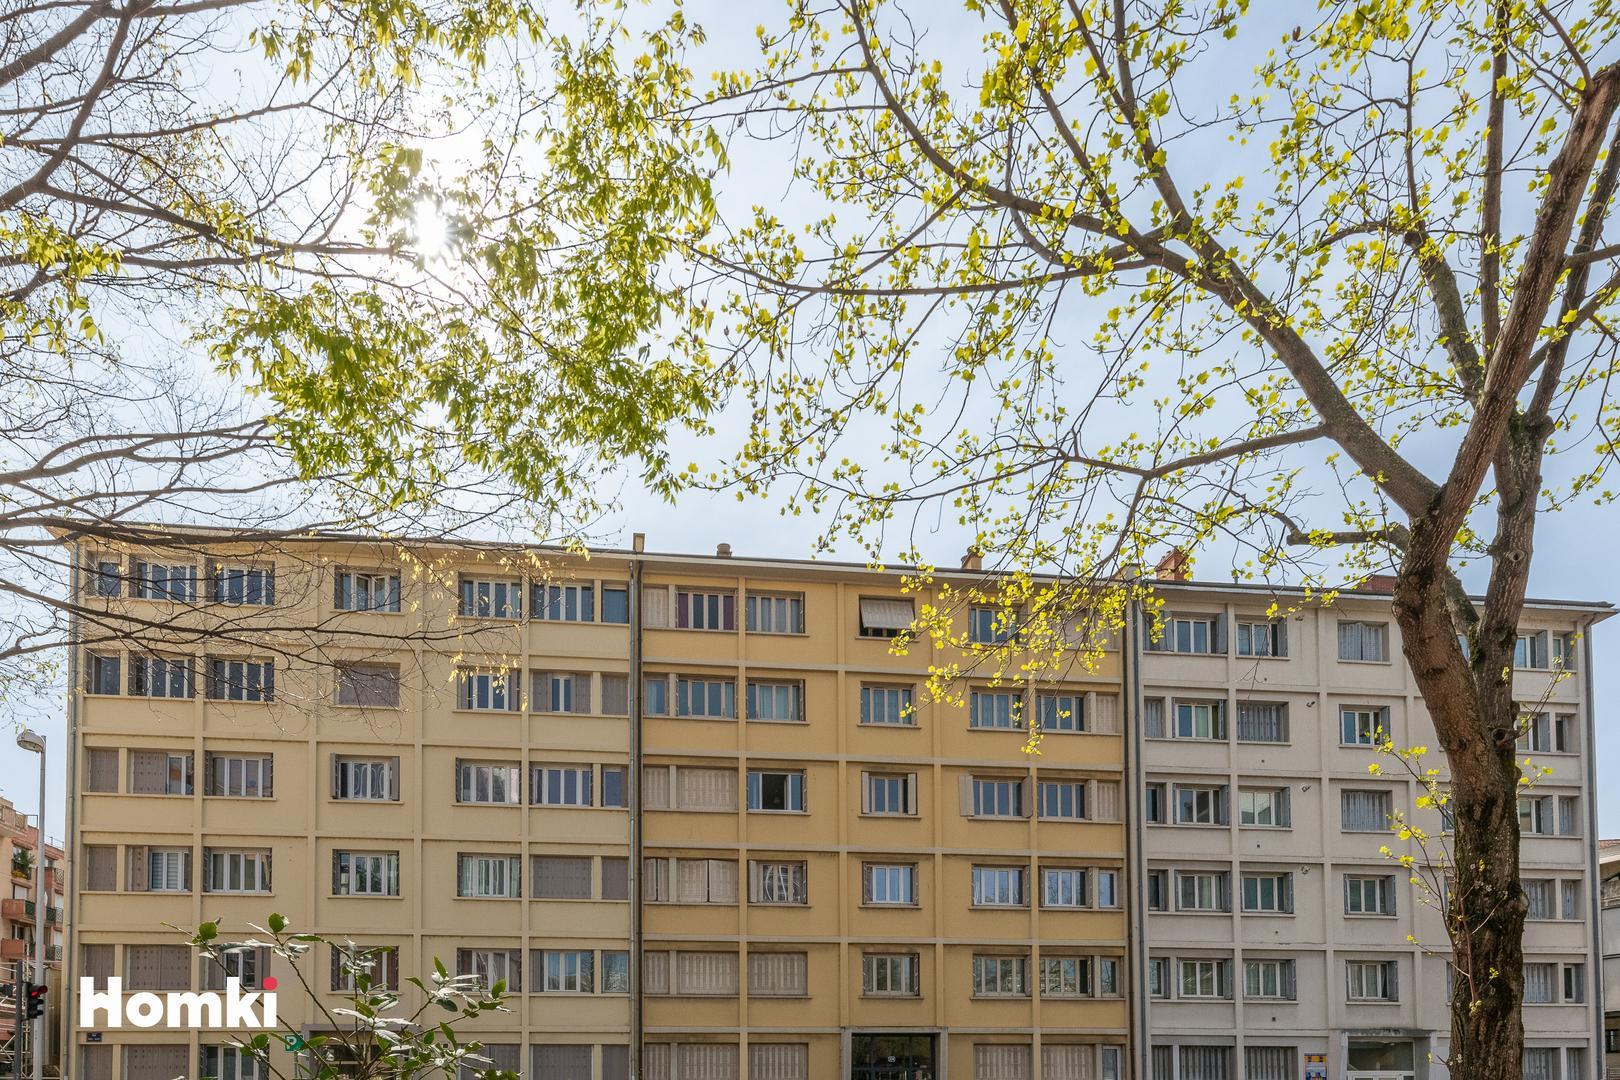 Homki - Vente Appartement  de 59.89 m² à Lyon 69003